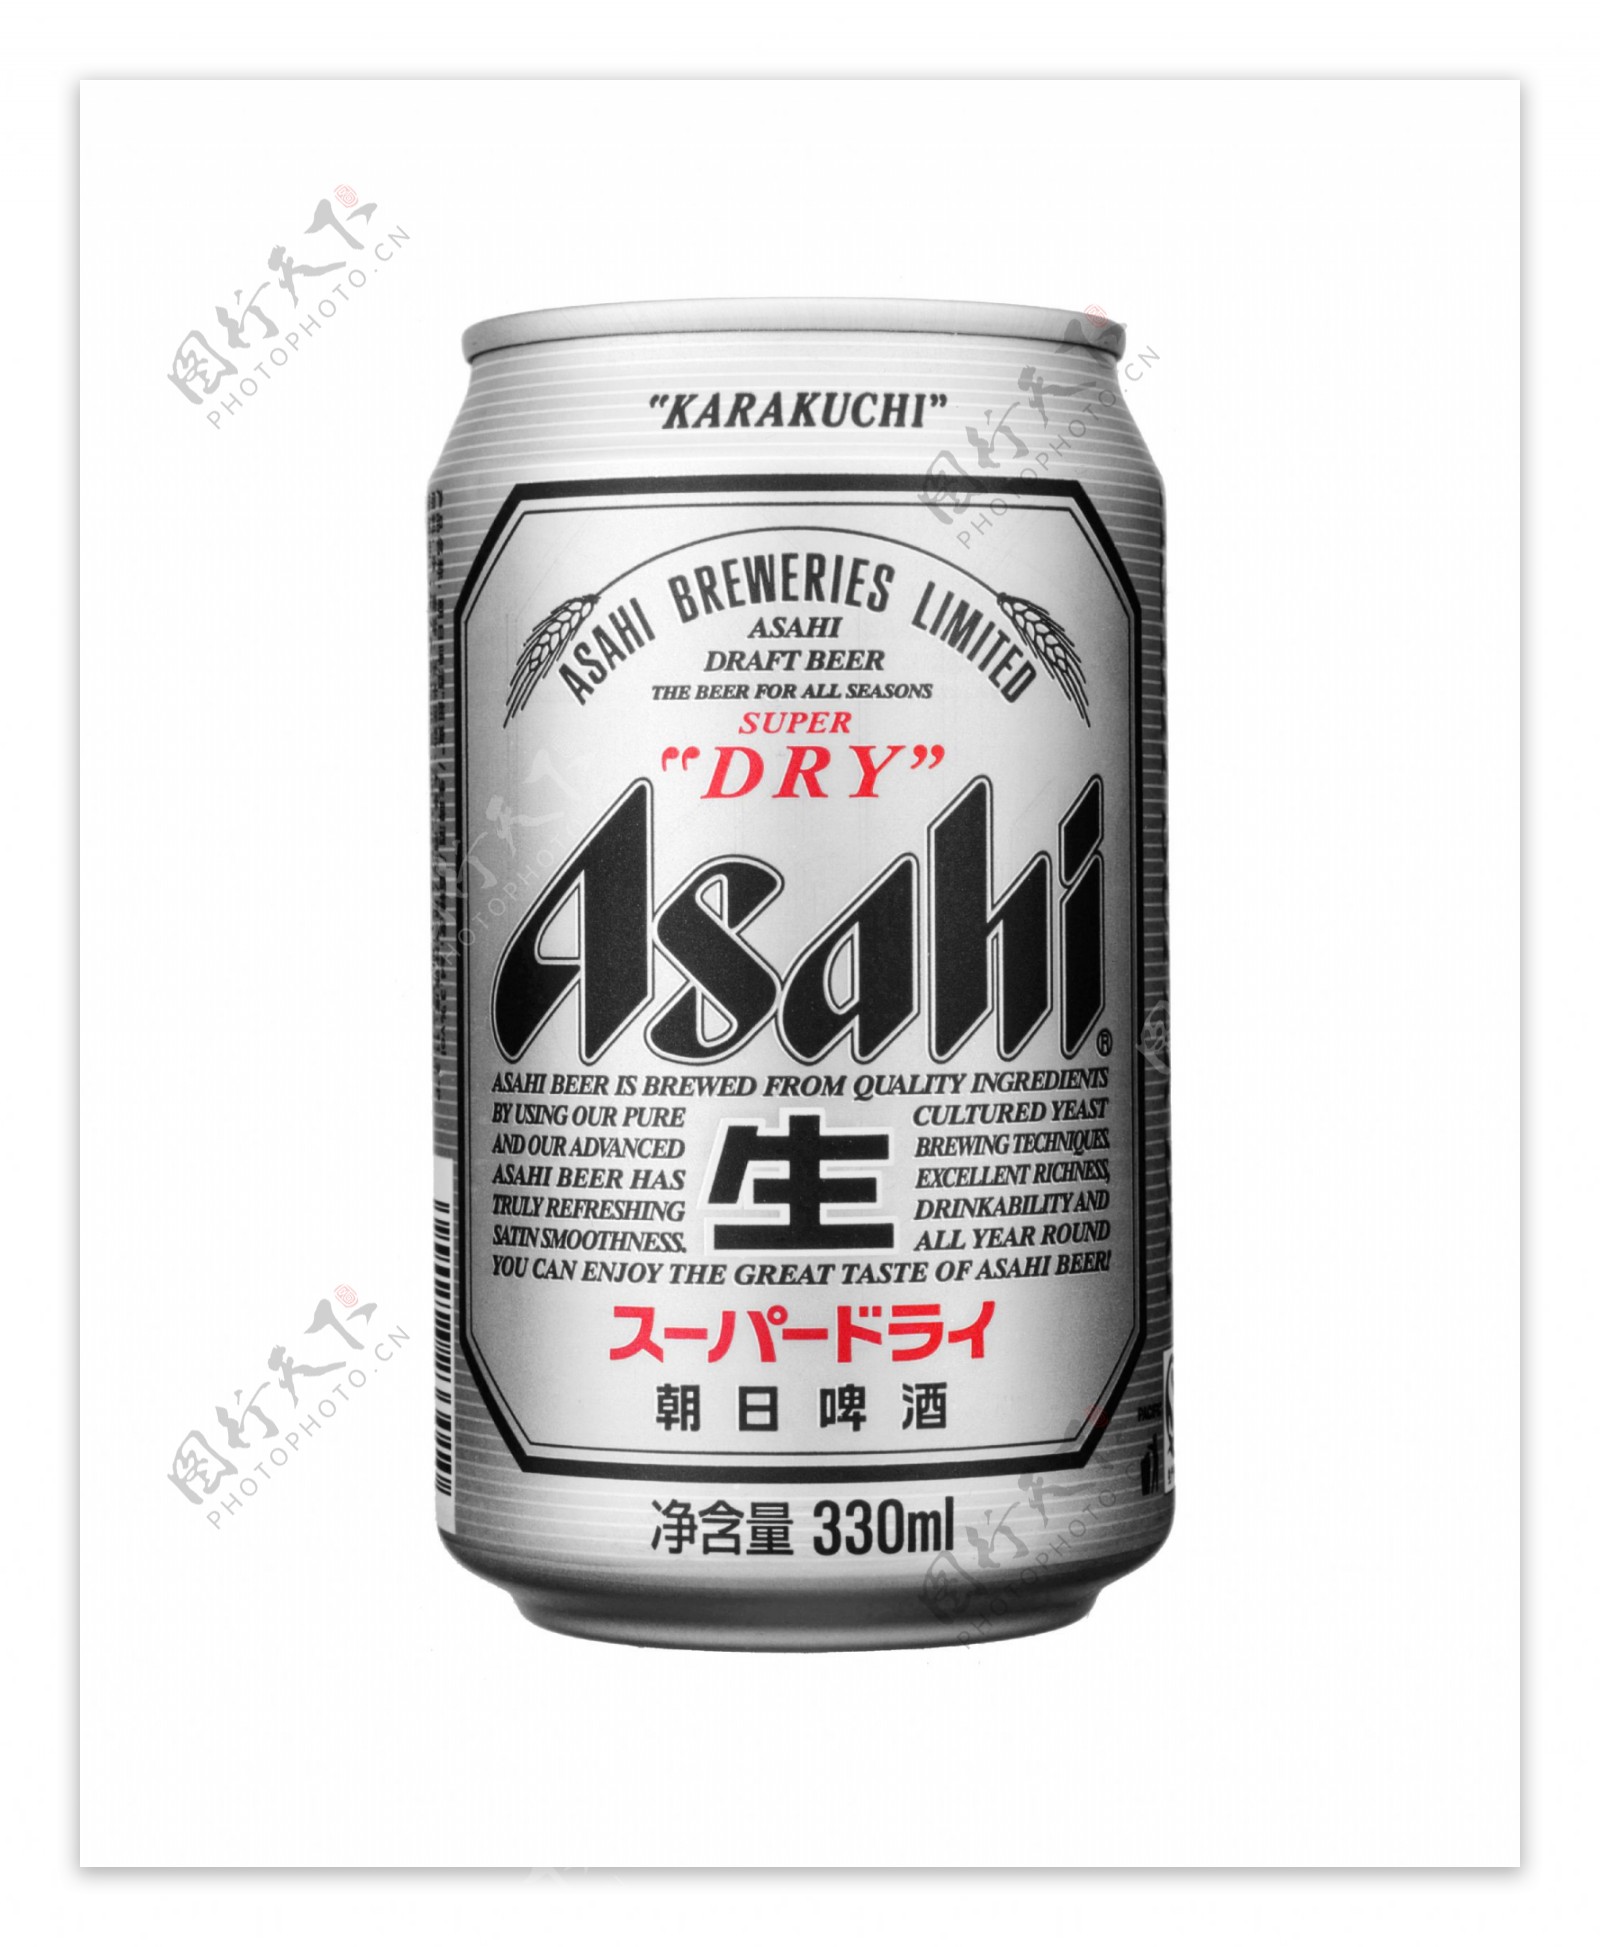 朝日啤酒图片